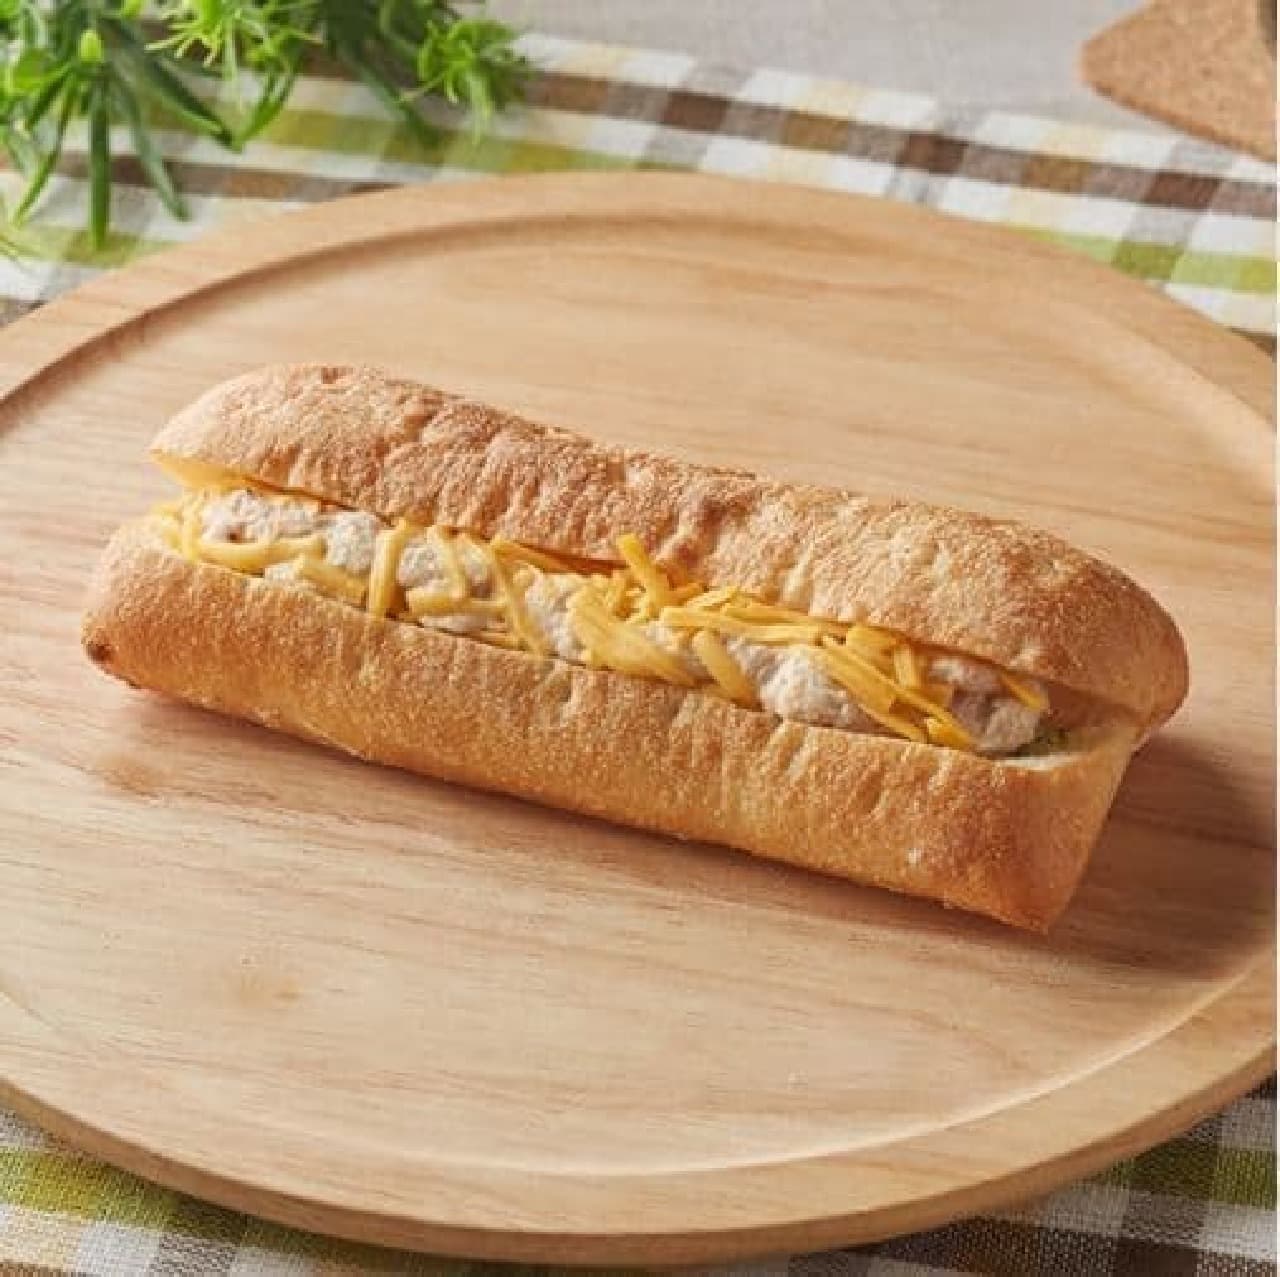 FamilyMart "Hot Sandwich Tuna and Cheddar"